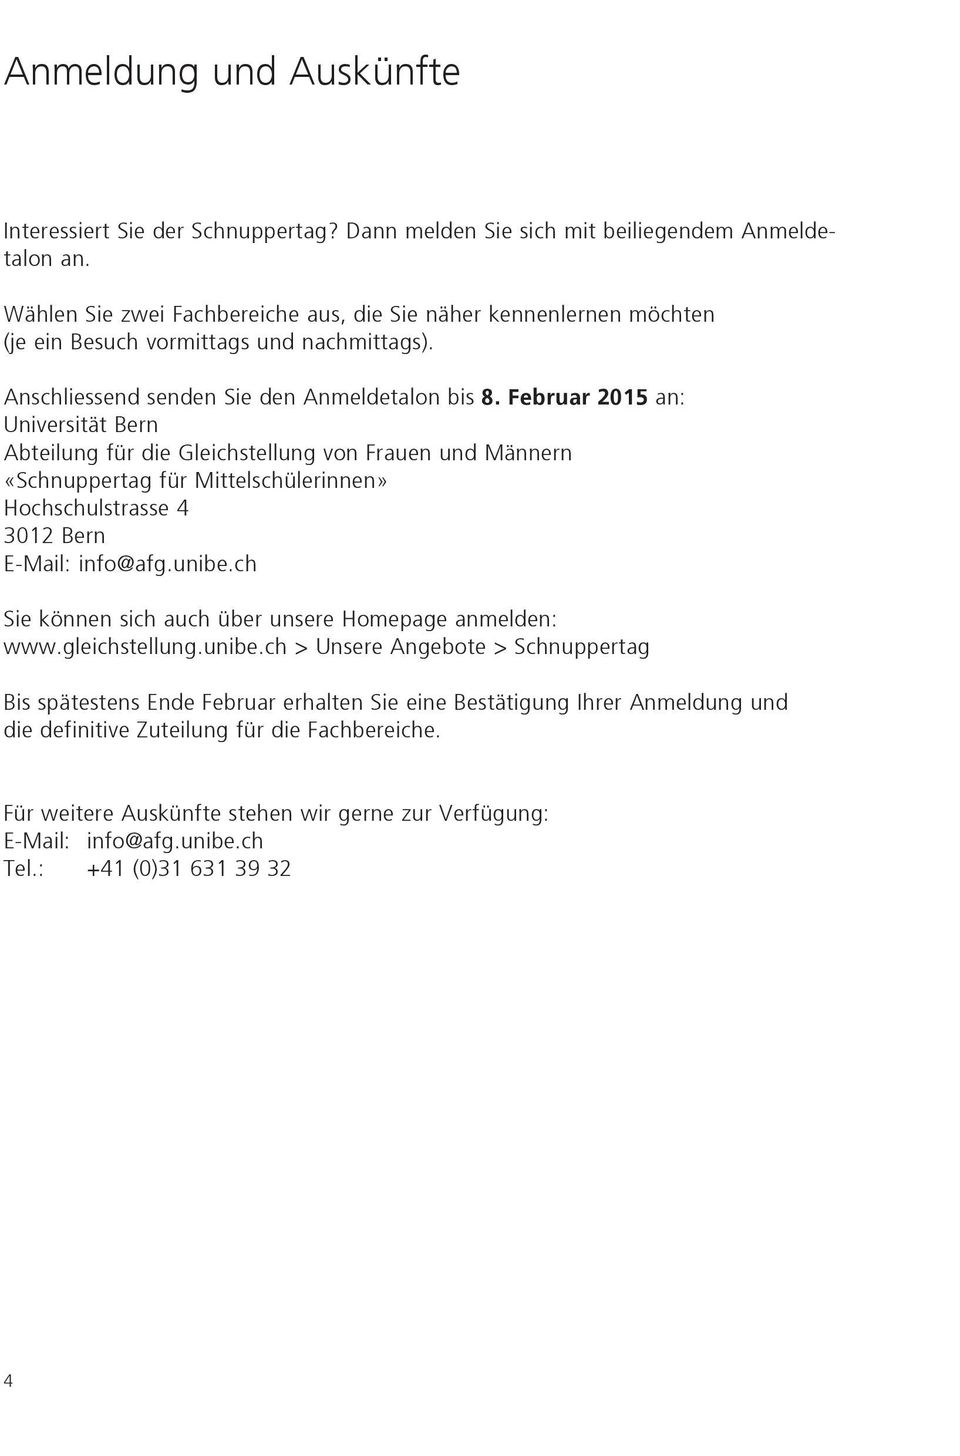 Februar 2015 an: Universität Bern Abteilung für die Gleichstellung von Frauen und Männern «Schnuppertag für Mittelschülerinnen» Hochschulstrasse 4 3012 Bern E-Mail: info@afg.unibe.